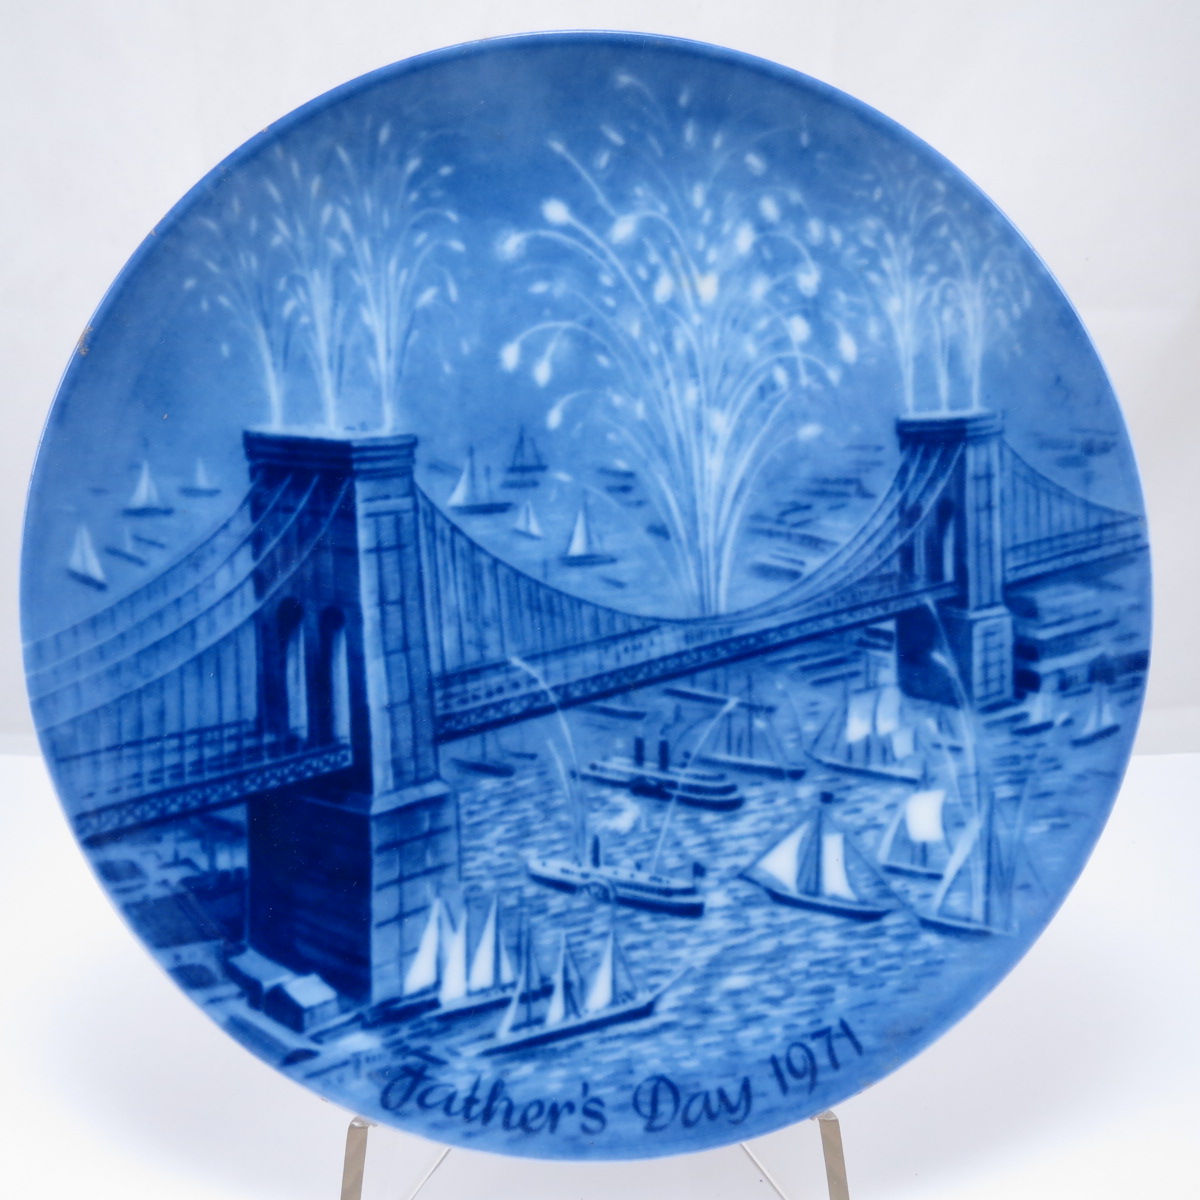 Декоративная коллекционная тарелка "День отца 1971: Бруклинский мост". Фарфор, деколь. Германия, Berlin Design. 1971